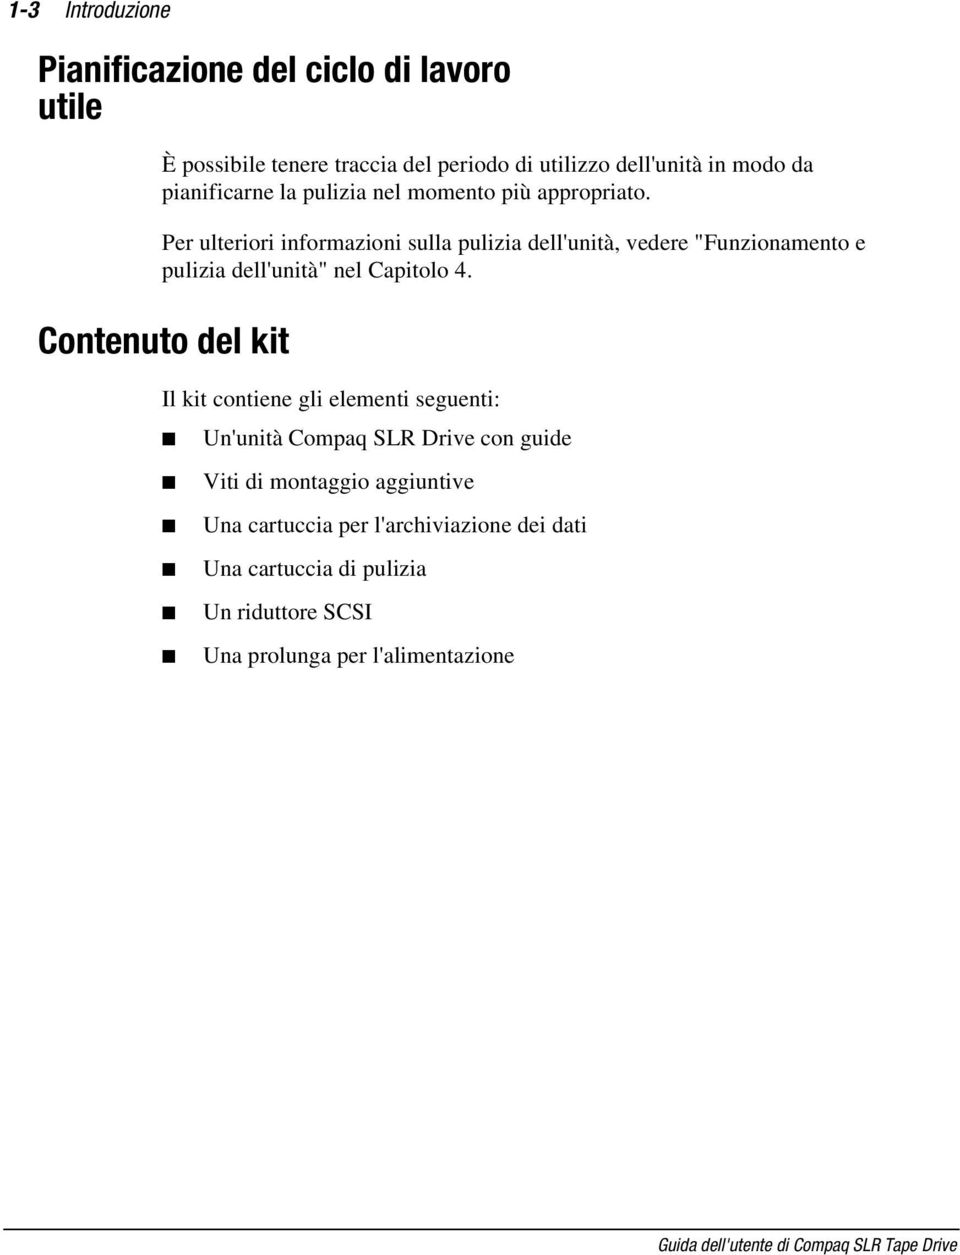 Contenuto del kit Il kit contiene gli elementi seguenti: Un'unità Compaq SLR Drive con guide Viti di montaggio aggiuntive Una cartuccia per l'archiviazione dei